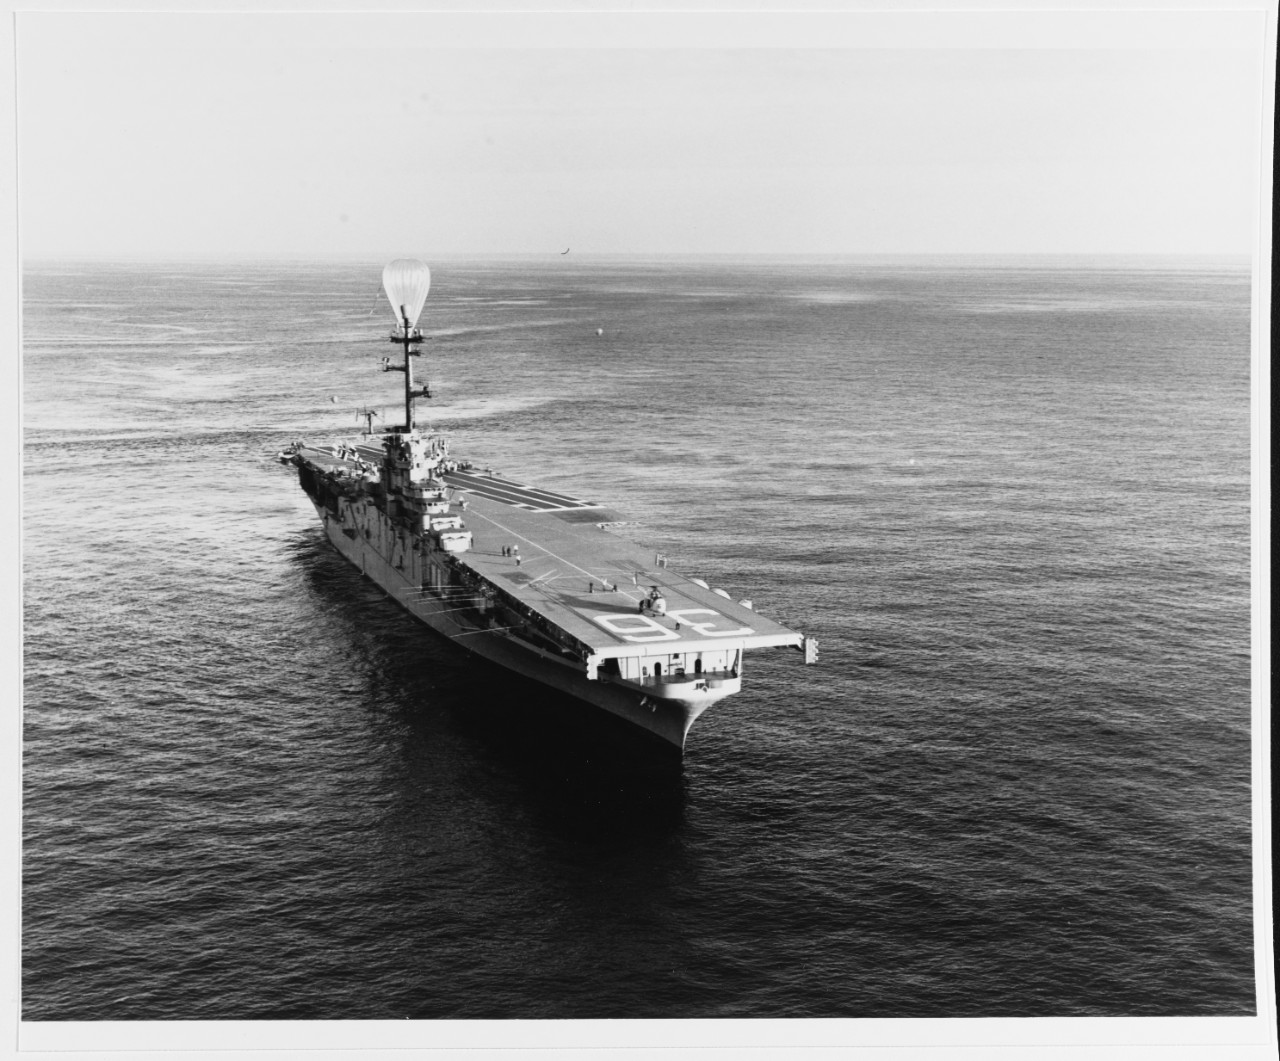 USS ANTIETAM (CVS-36)